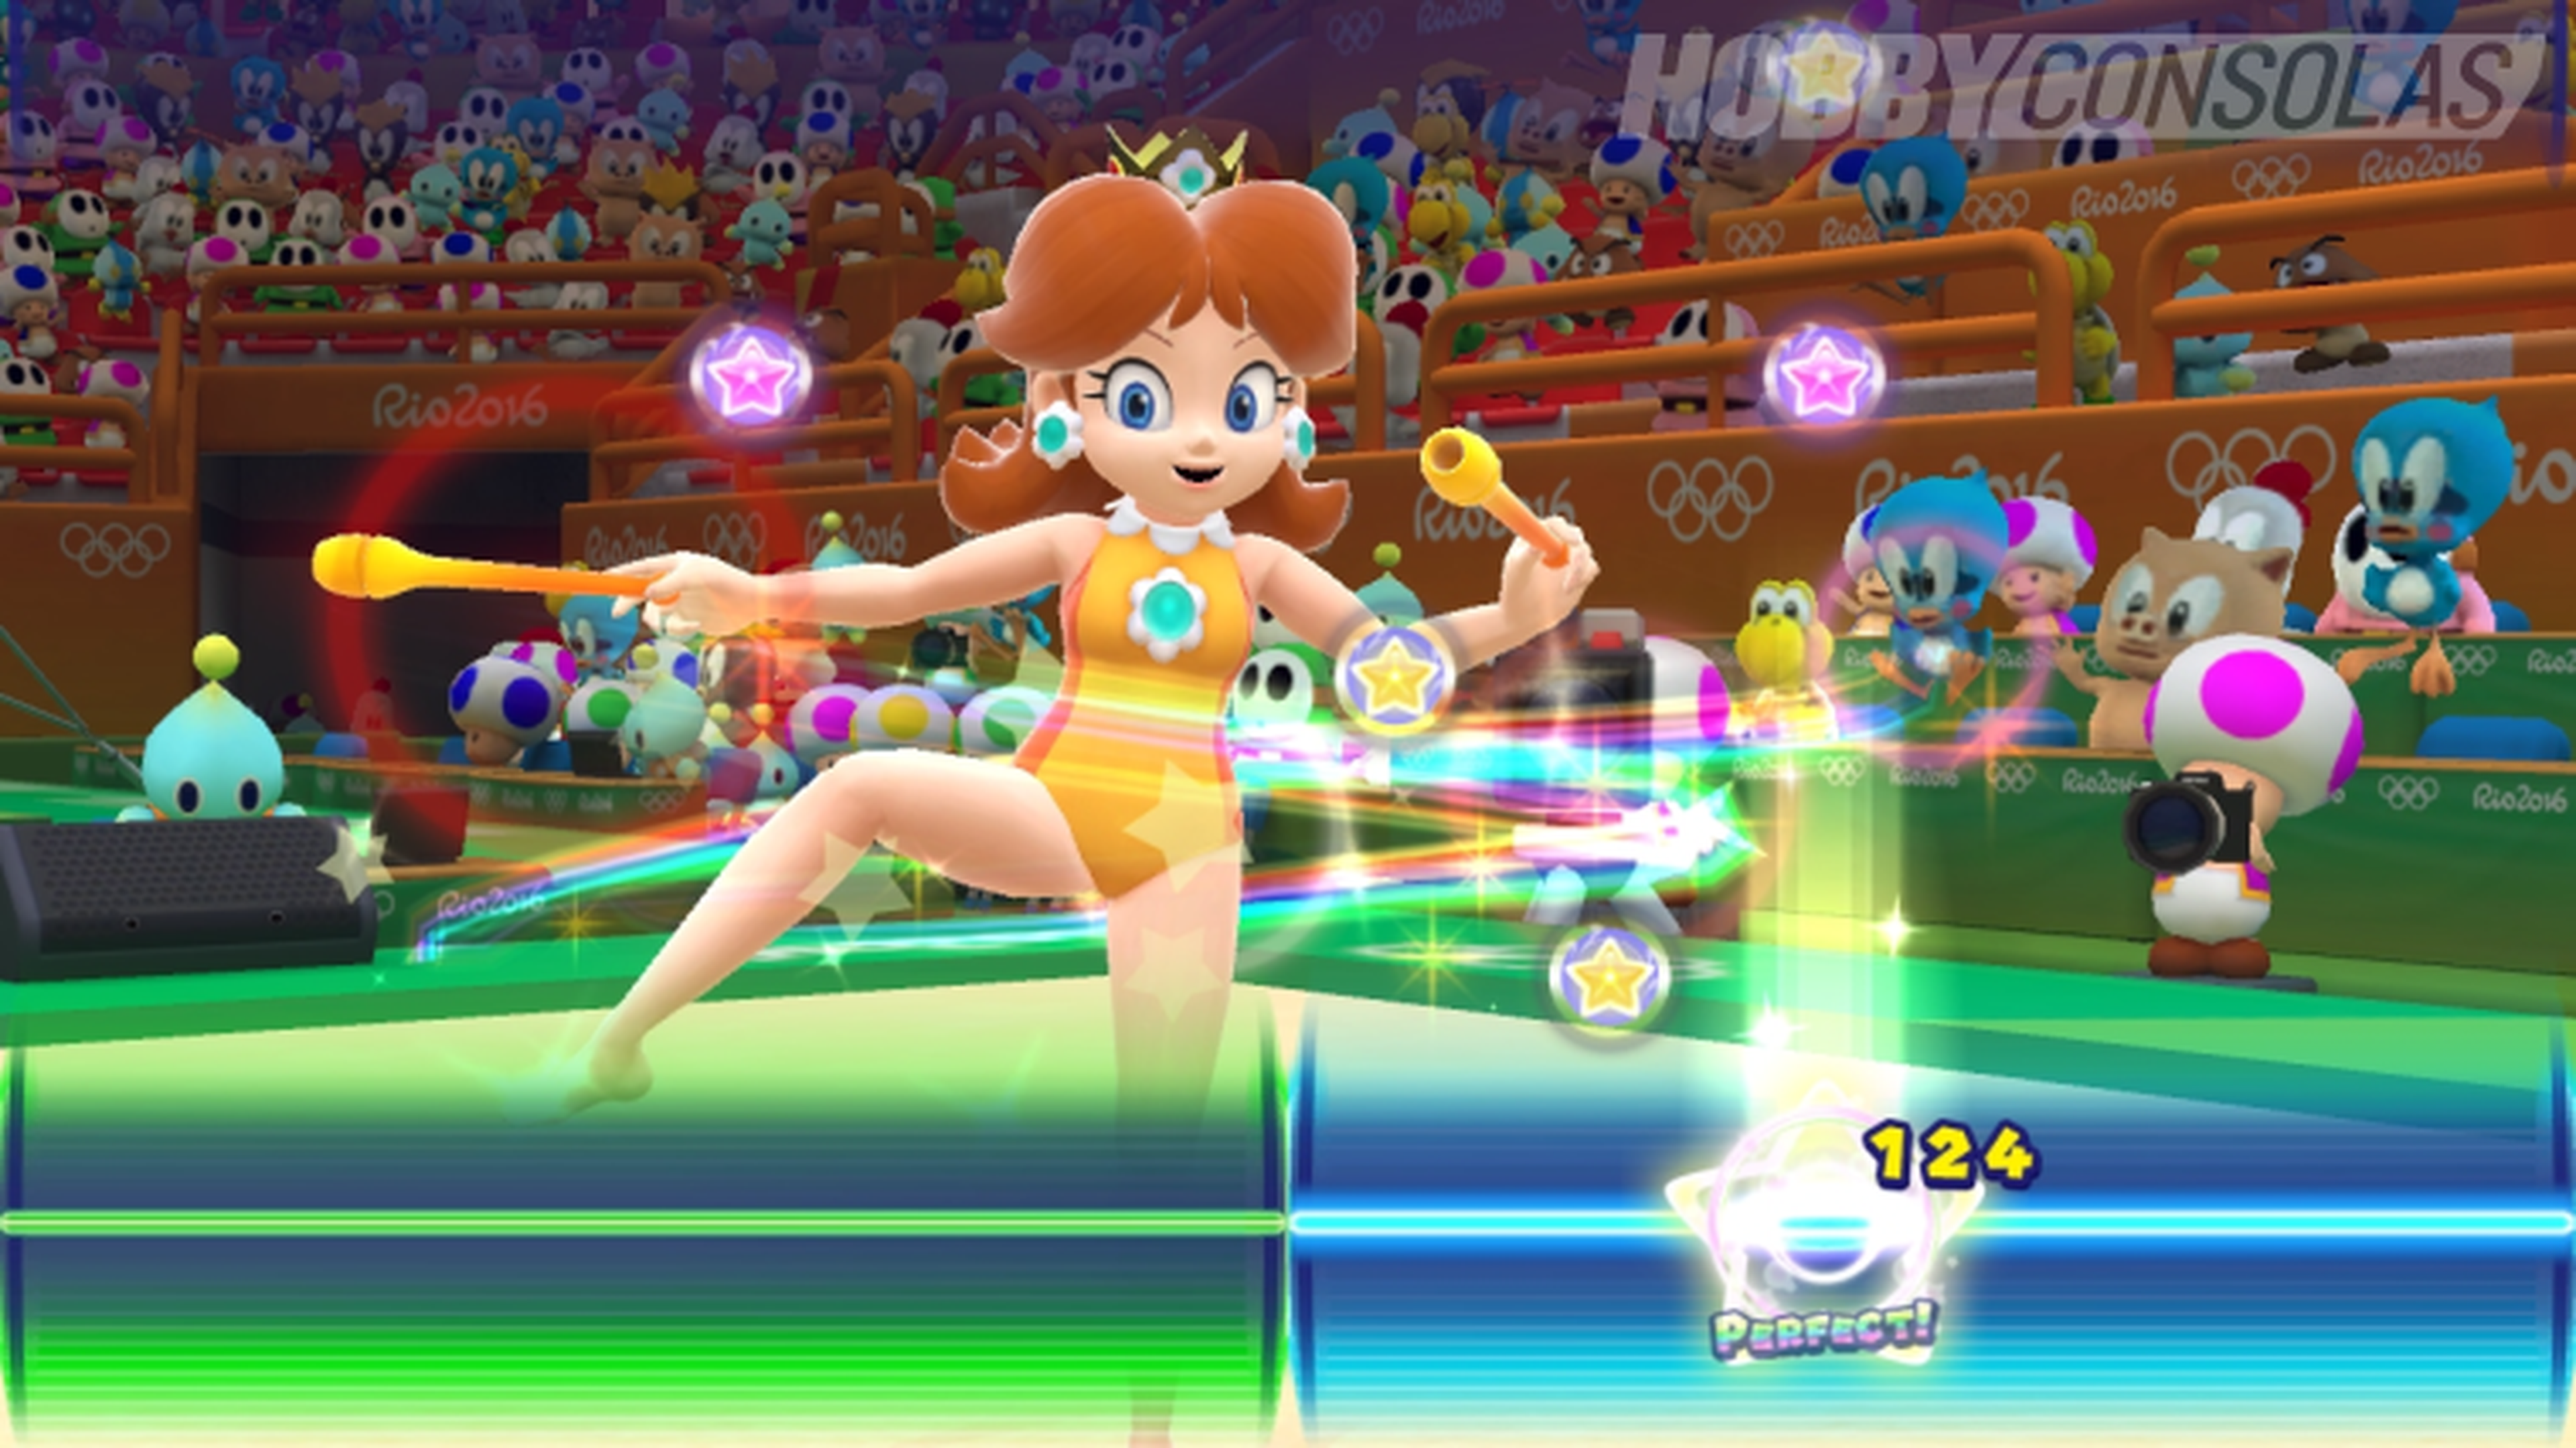 Mario & Sonic en los Juegos Olímpicos Río 2016 - Avance para Wii U